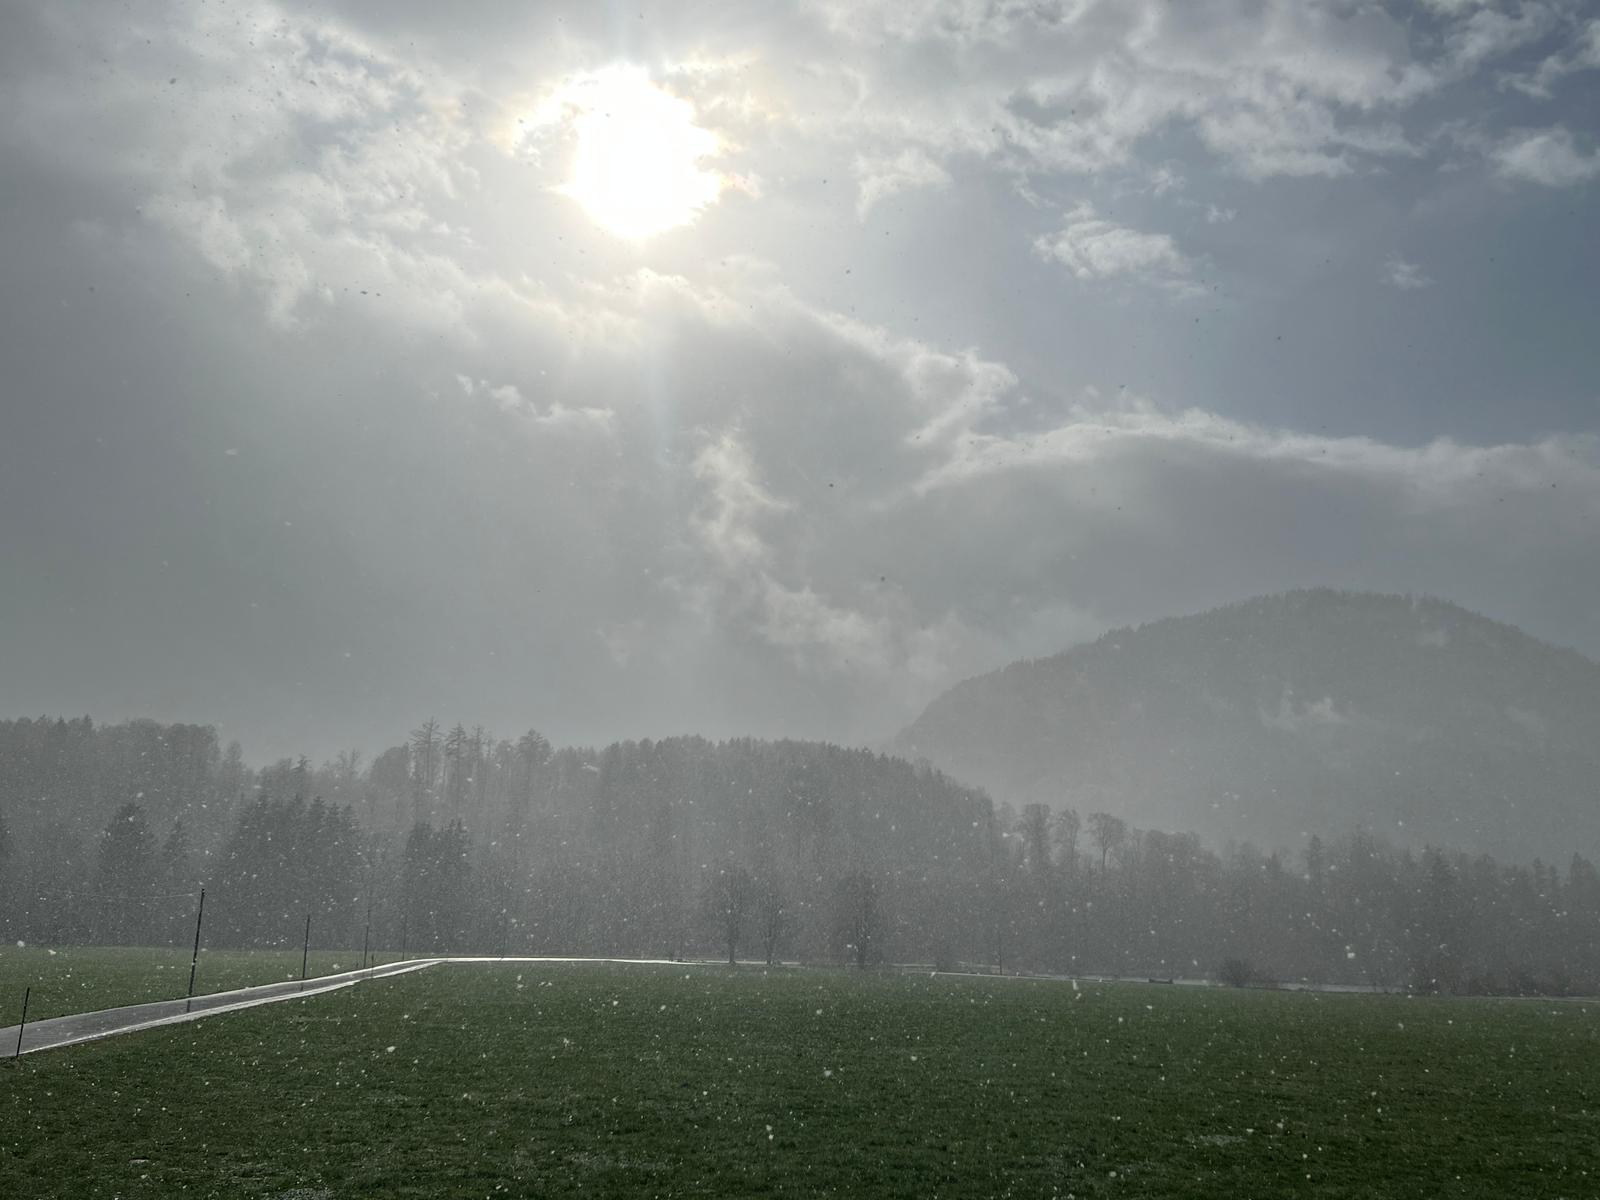 Blick zu Sonne hinter Nebel. Grüne Wiese und leichter Schneefall. Im Hintergrund deuten sich Bäume an